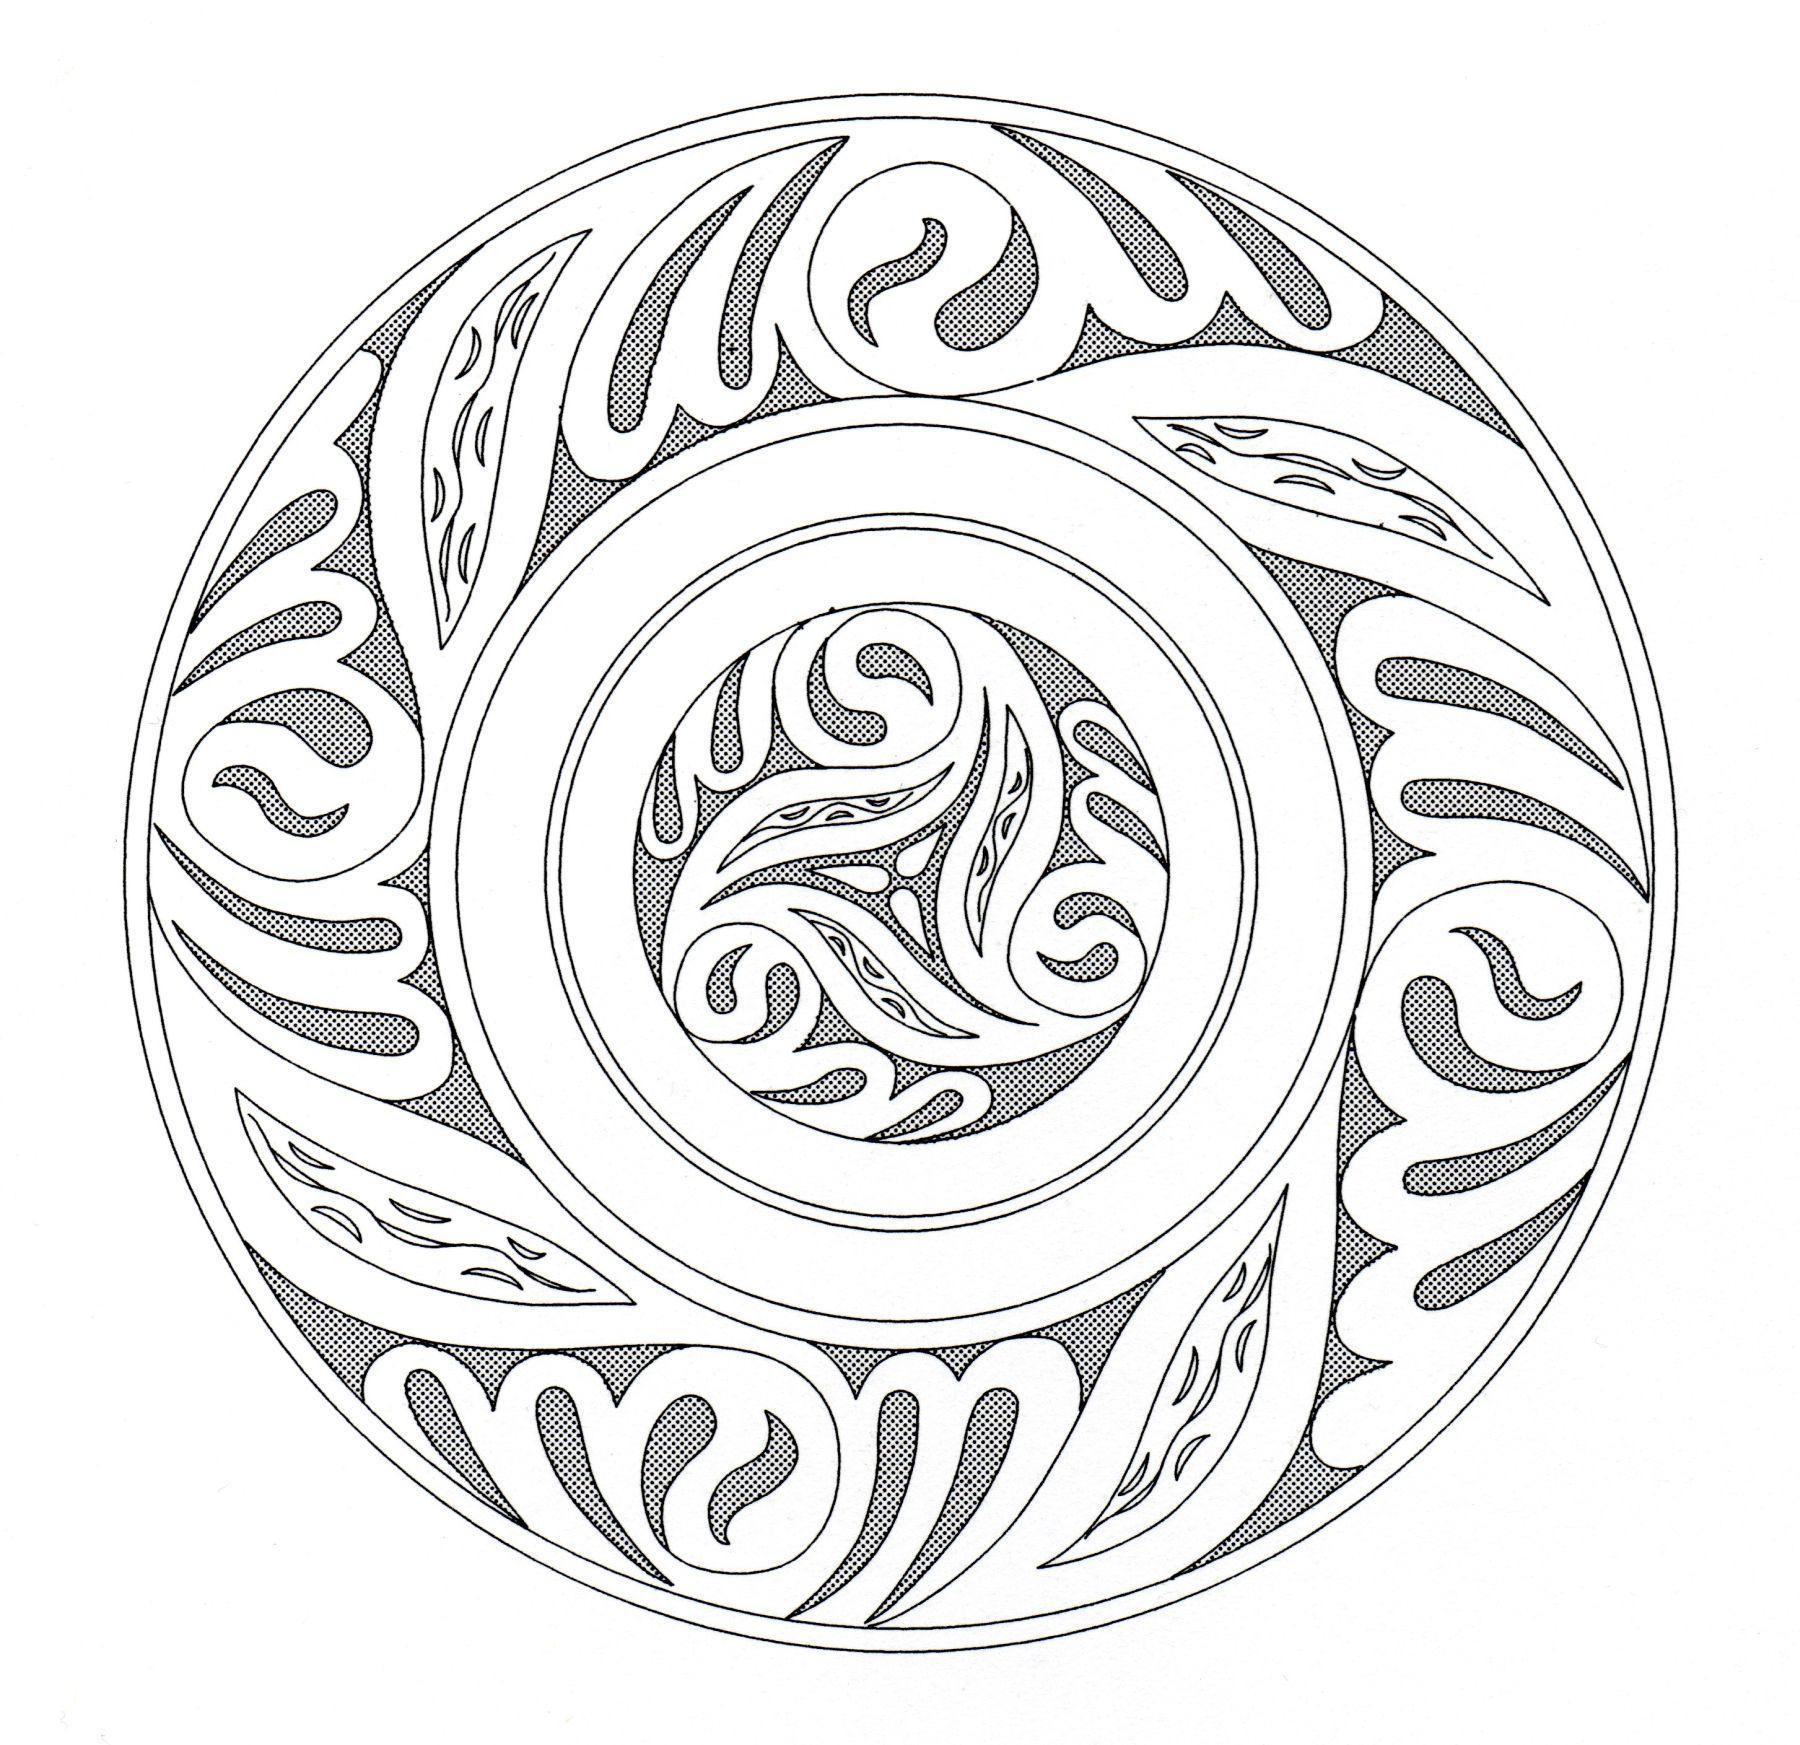 Un Mandala 'celtique' qui sort de l'ordinaire, qui vous permettra de passer un bon moment de coloriage, sans trop vous compliquer la vie à colorier de toute petites zones.